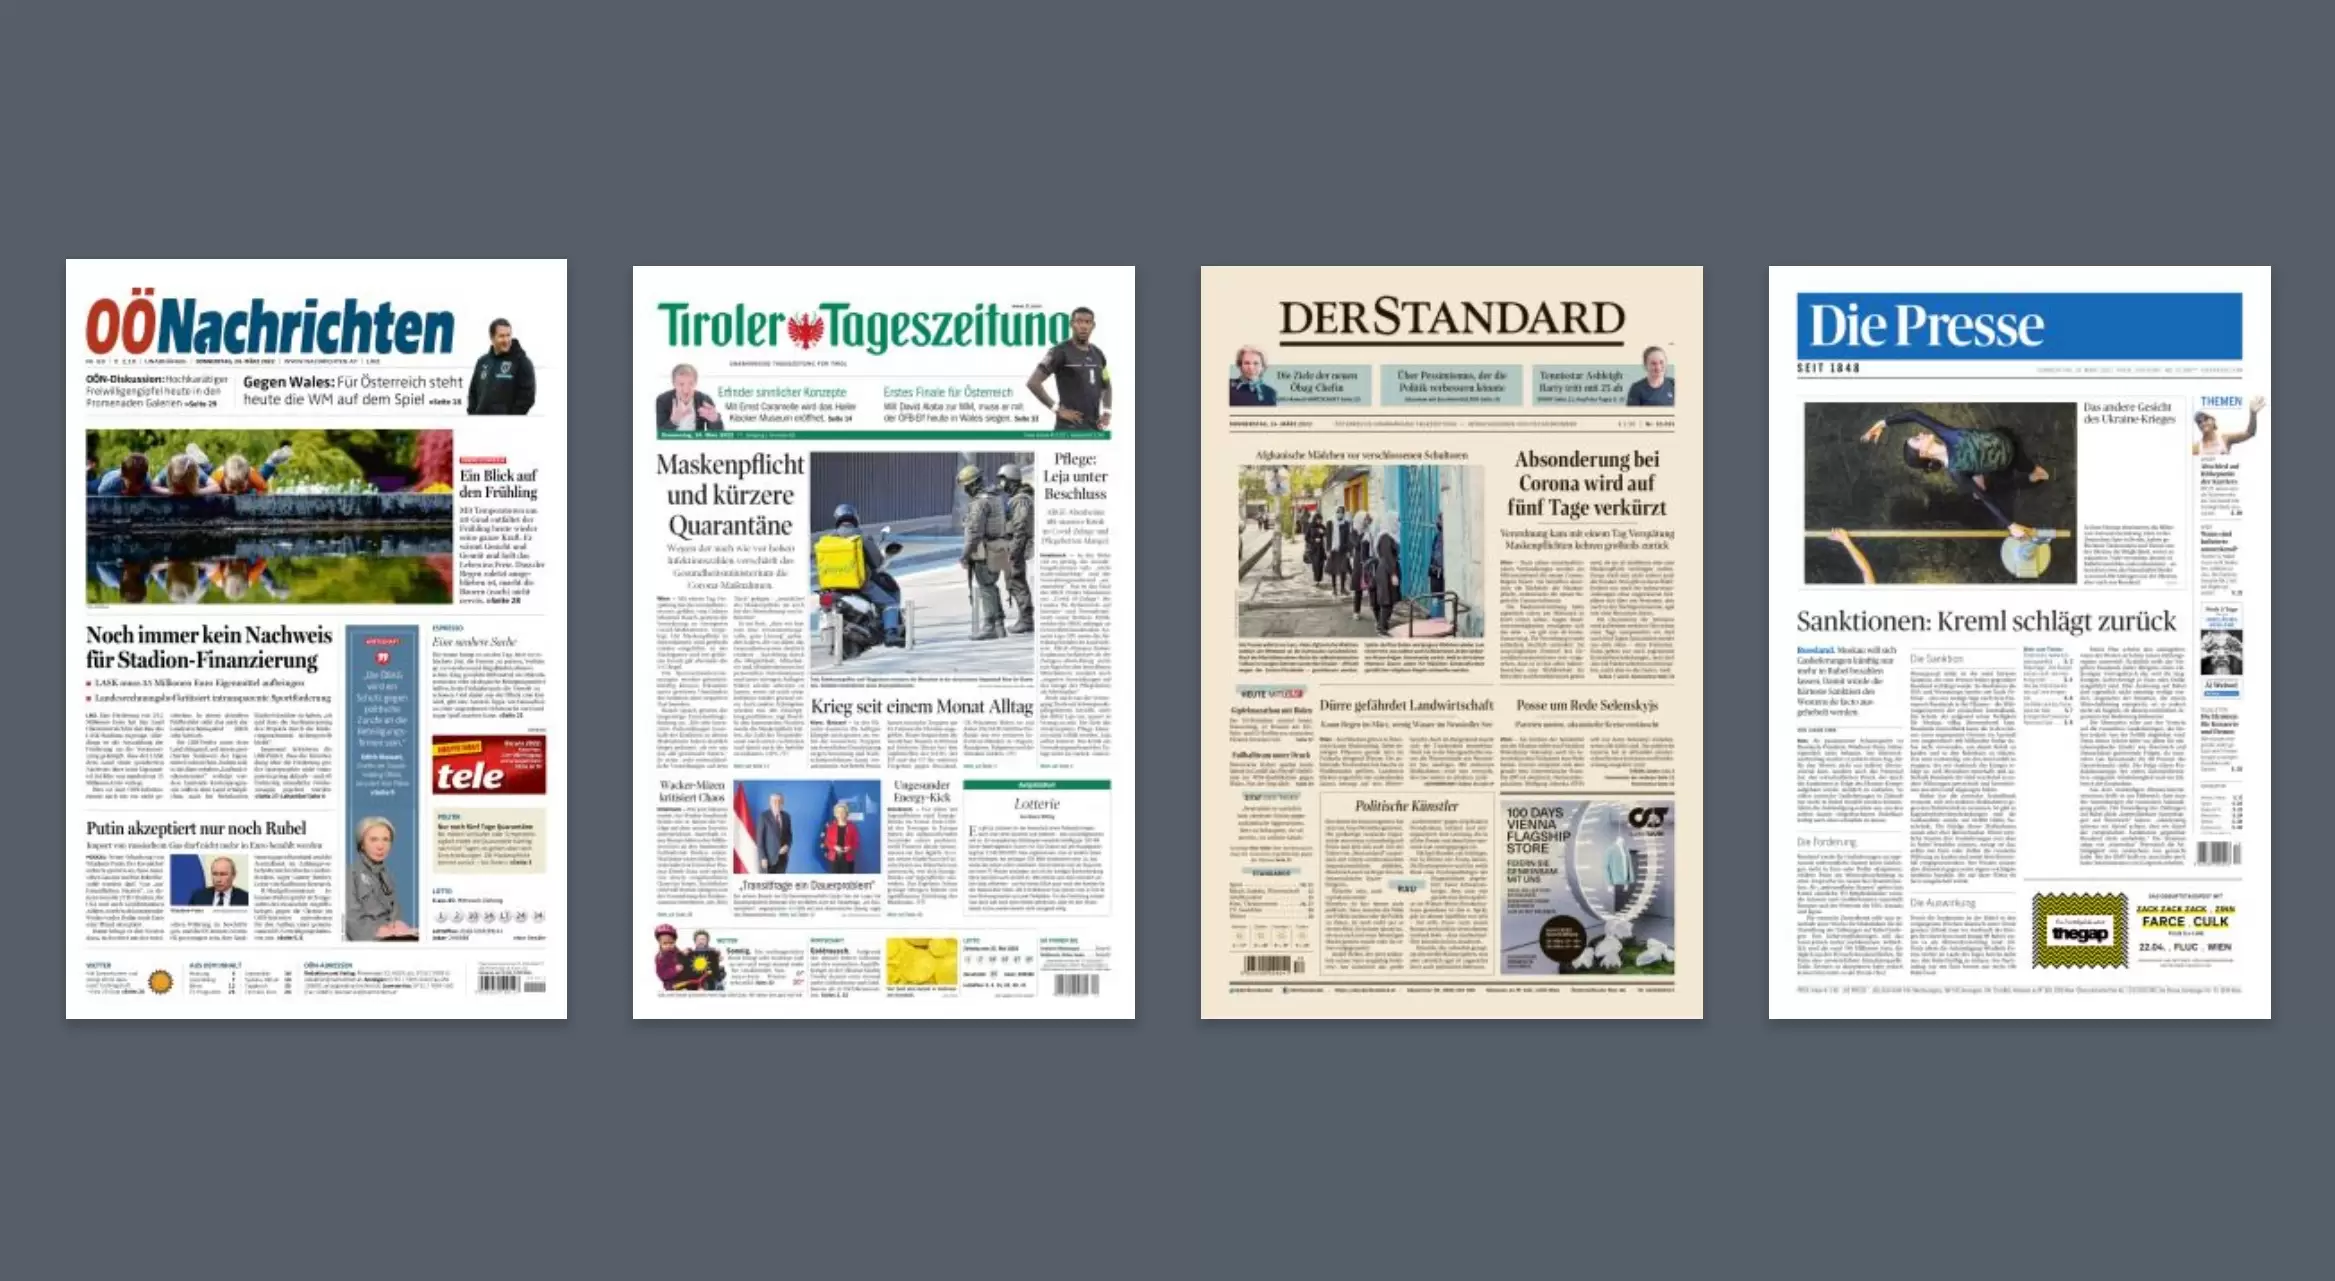 Österreichs Tageszeitungen erhalten Förderung für den digitalen Wandel. Screenshot: APA Kiosk